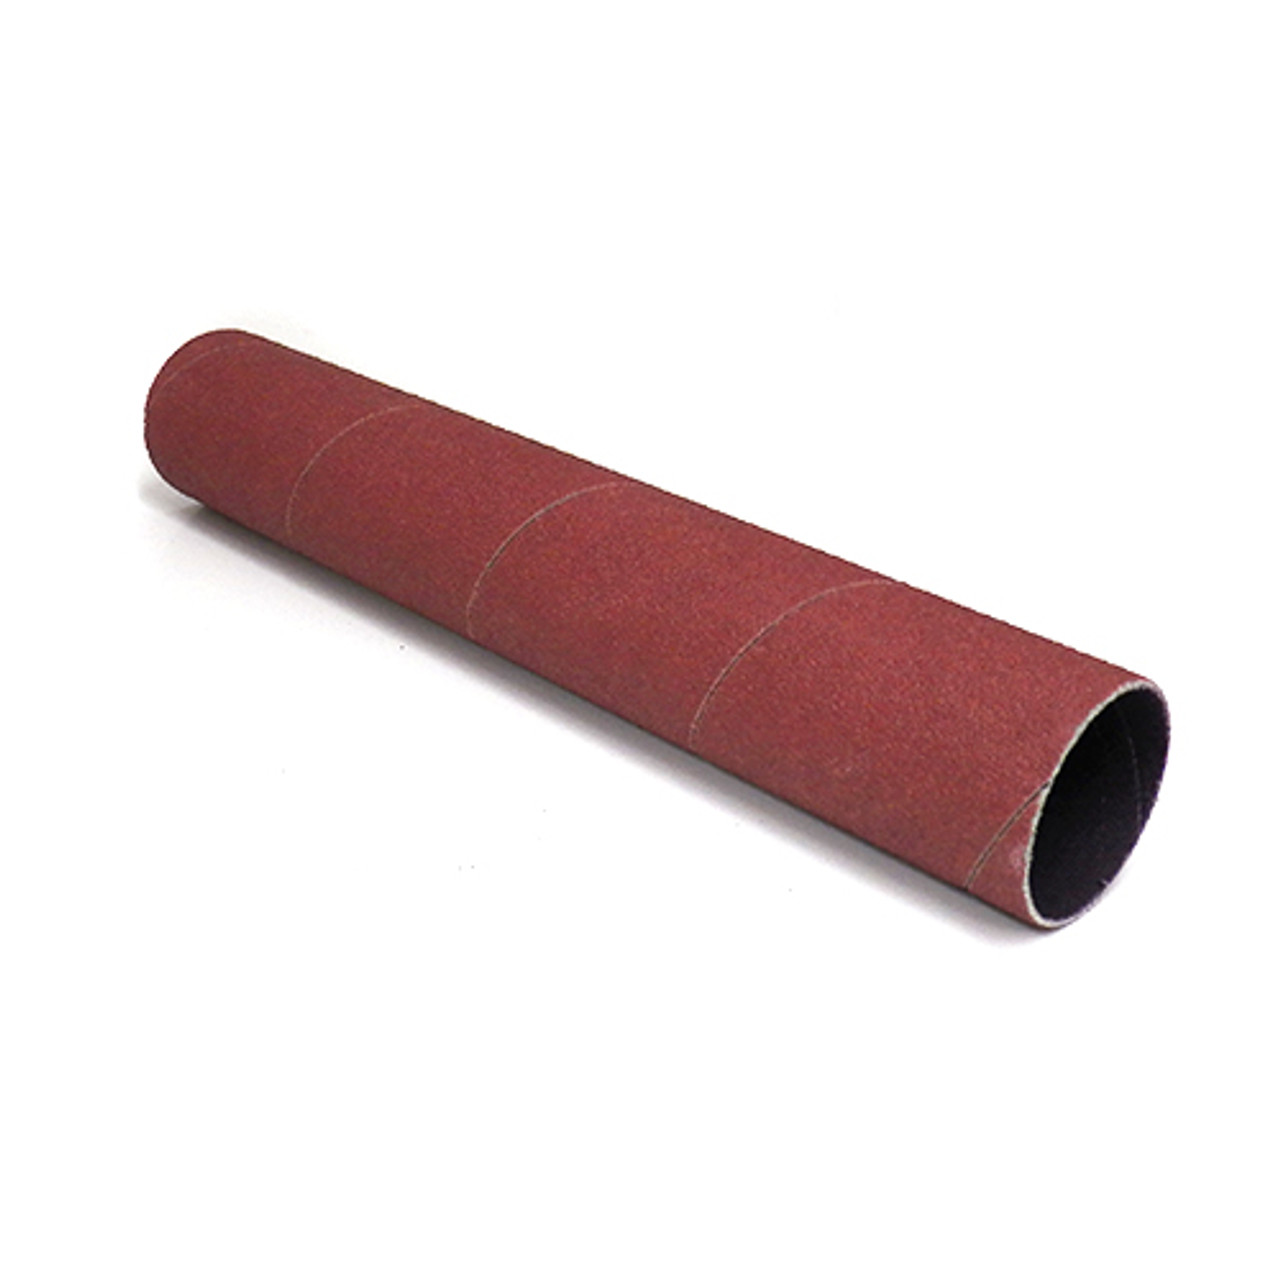 Klingspor Abrasives Aluminum Oxide Sanding Sleeves, 1-1/2"X 9" 60 Grit, 1pk